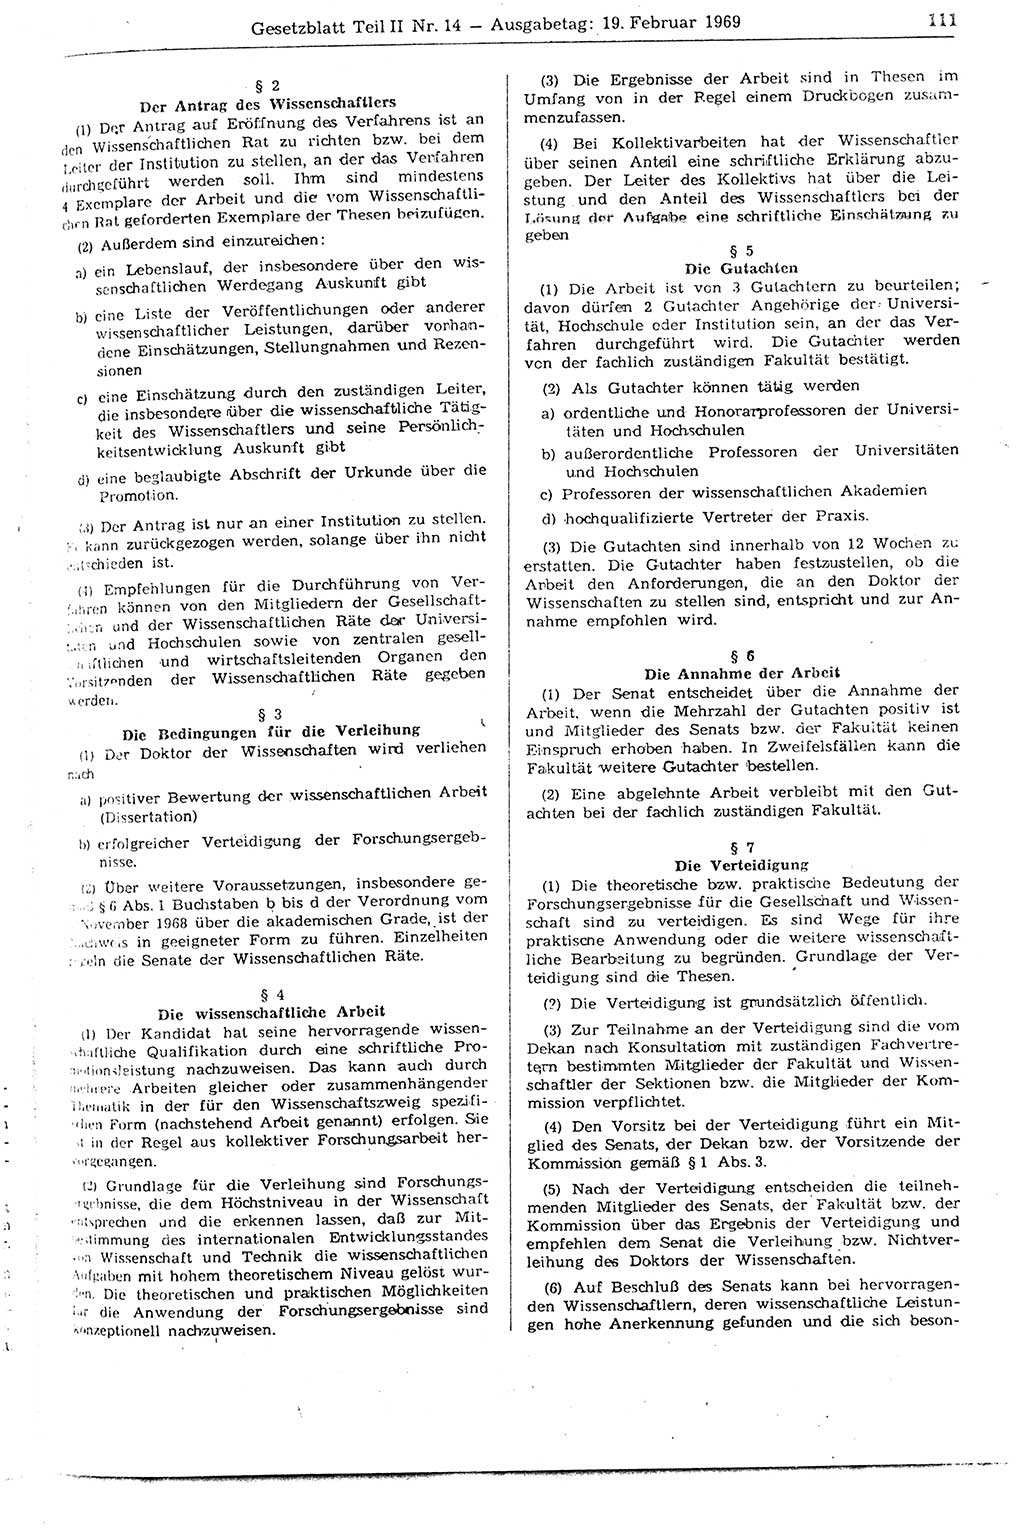 Gesetzblatt (GBl.) der Deutschen Demokratischen Republik (DDR) Teil ⅠⅠ 1969, Seite 111 (GBl. DDR ⅠⅠ 1969, S. 111)